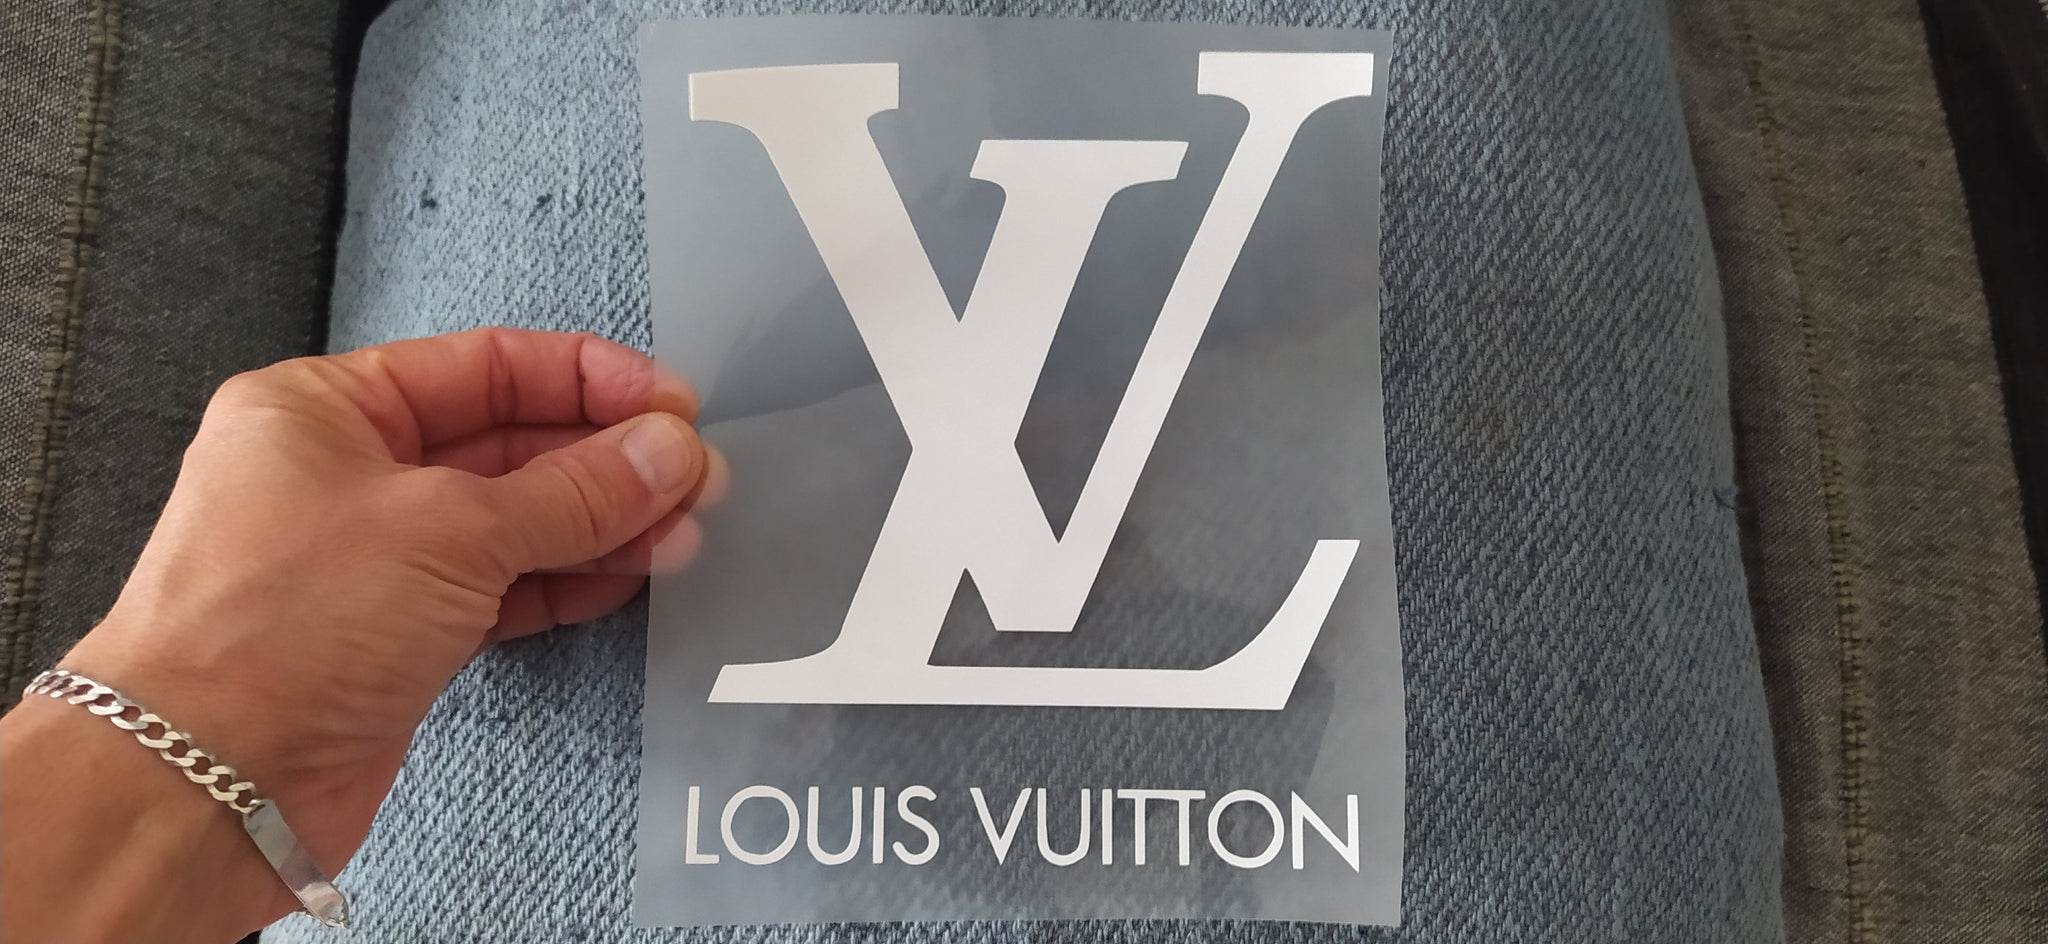 Louis Vuitton Bear T Shirt Heat Iron on Transfer Decal